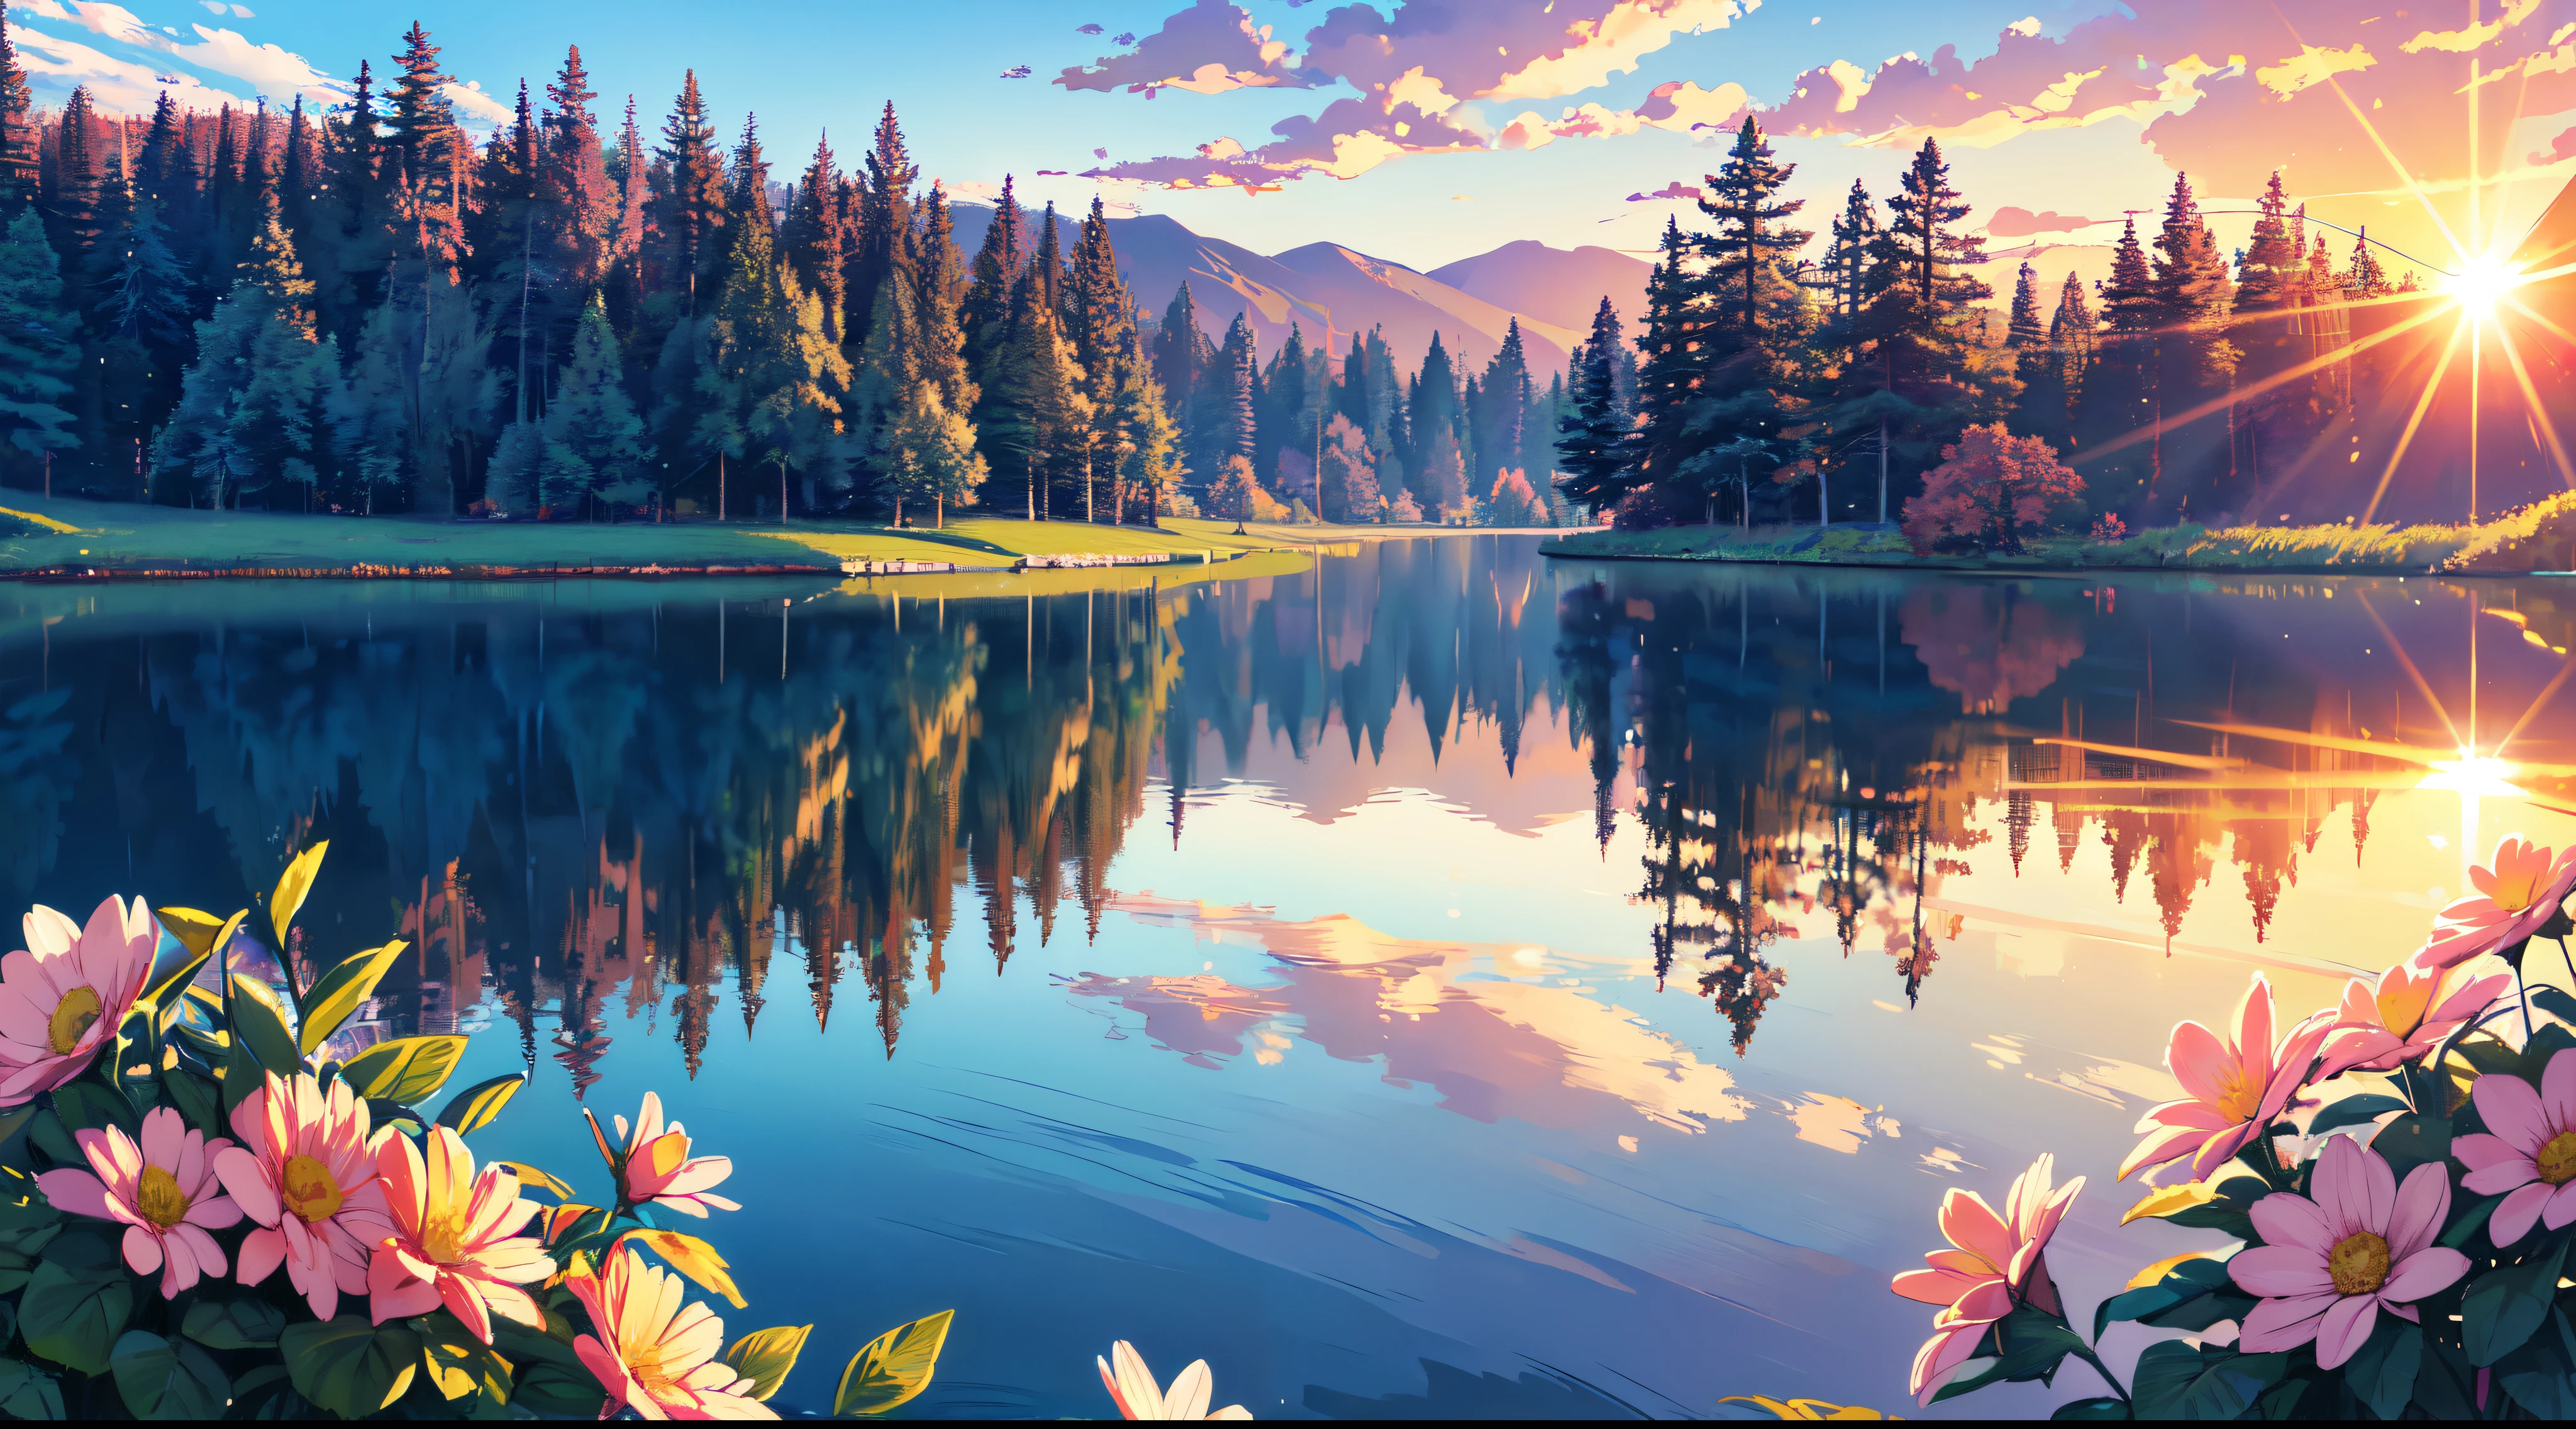 (更好的质量,4k,8千,高分辨率,艺术品:1.2),超详细,现实主义者:1.37, 小湖, 美丽的日落, 柔和的色彩, 阳光, 弗洛雷斯, 美丽的树木